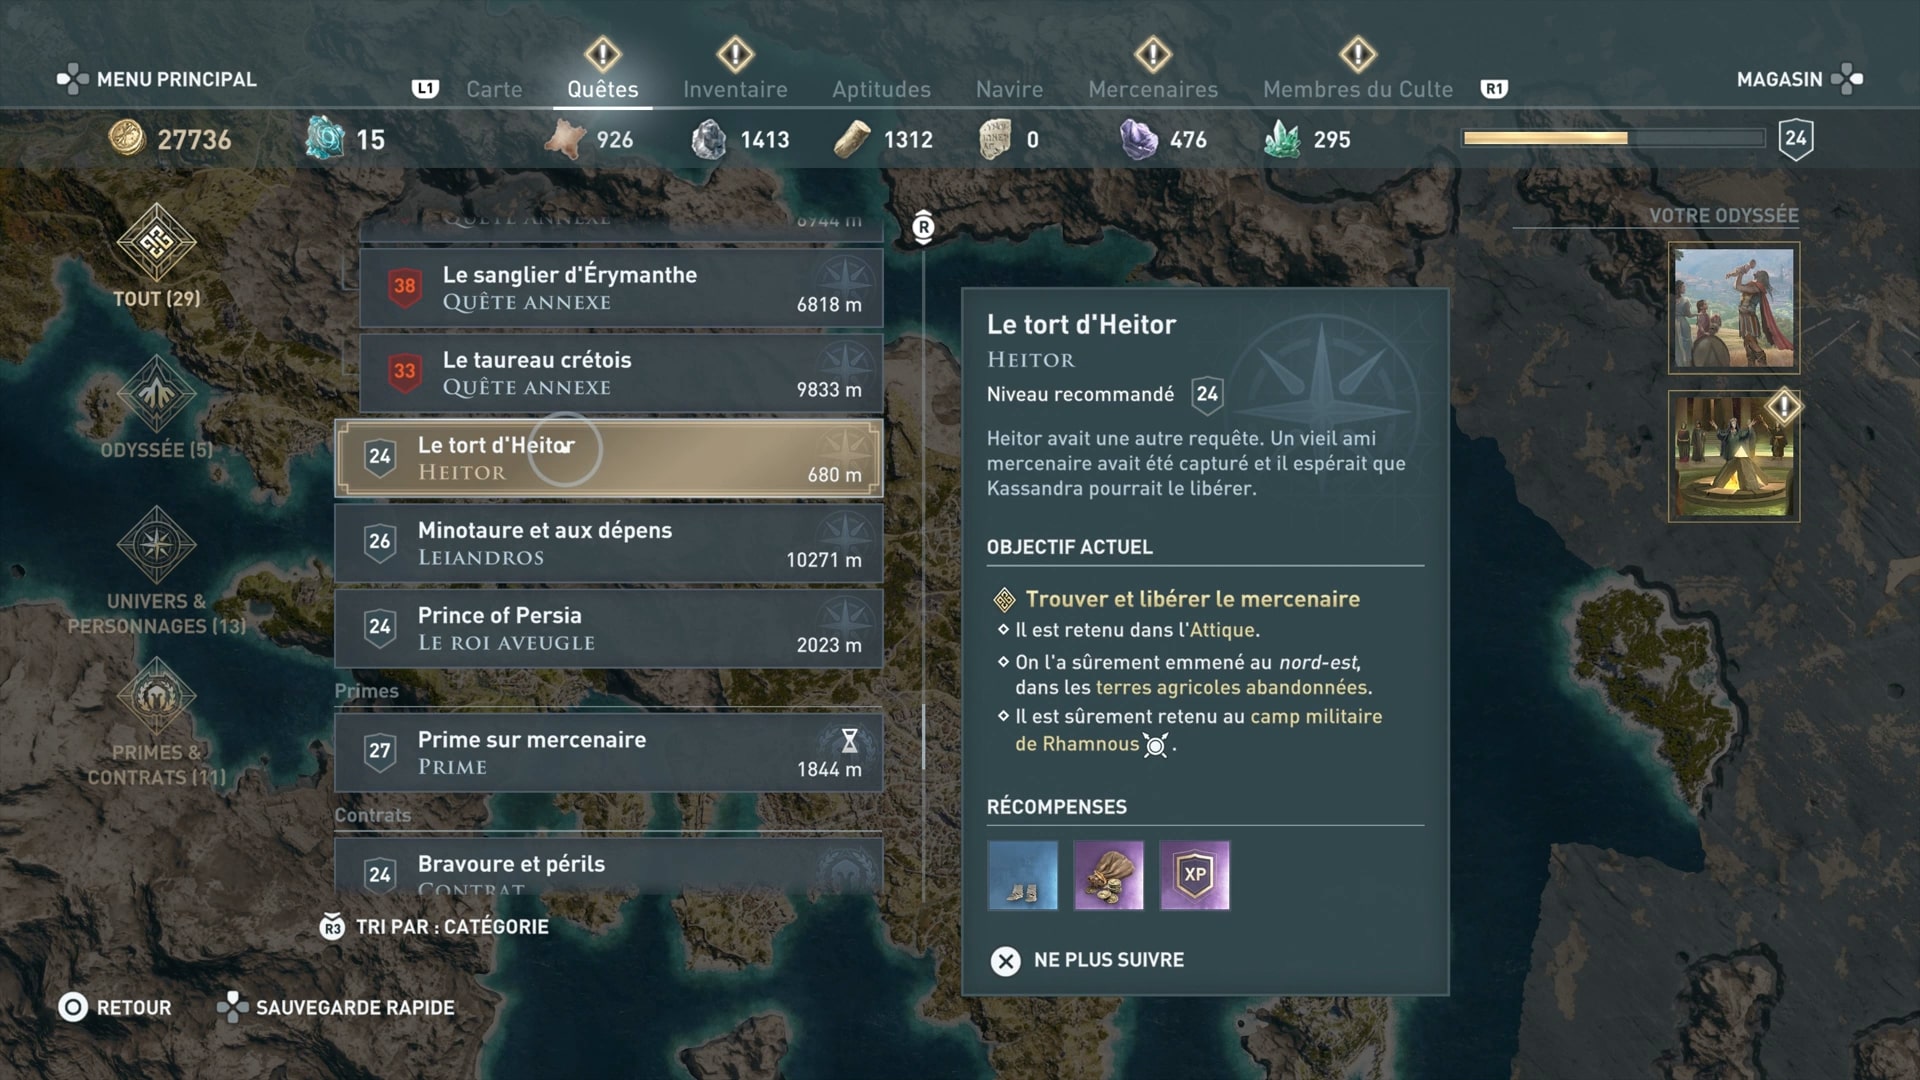 Assassins Creed Odyssey Tort Heitor Screenshot 2018 11 05 05 01 19 1